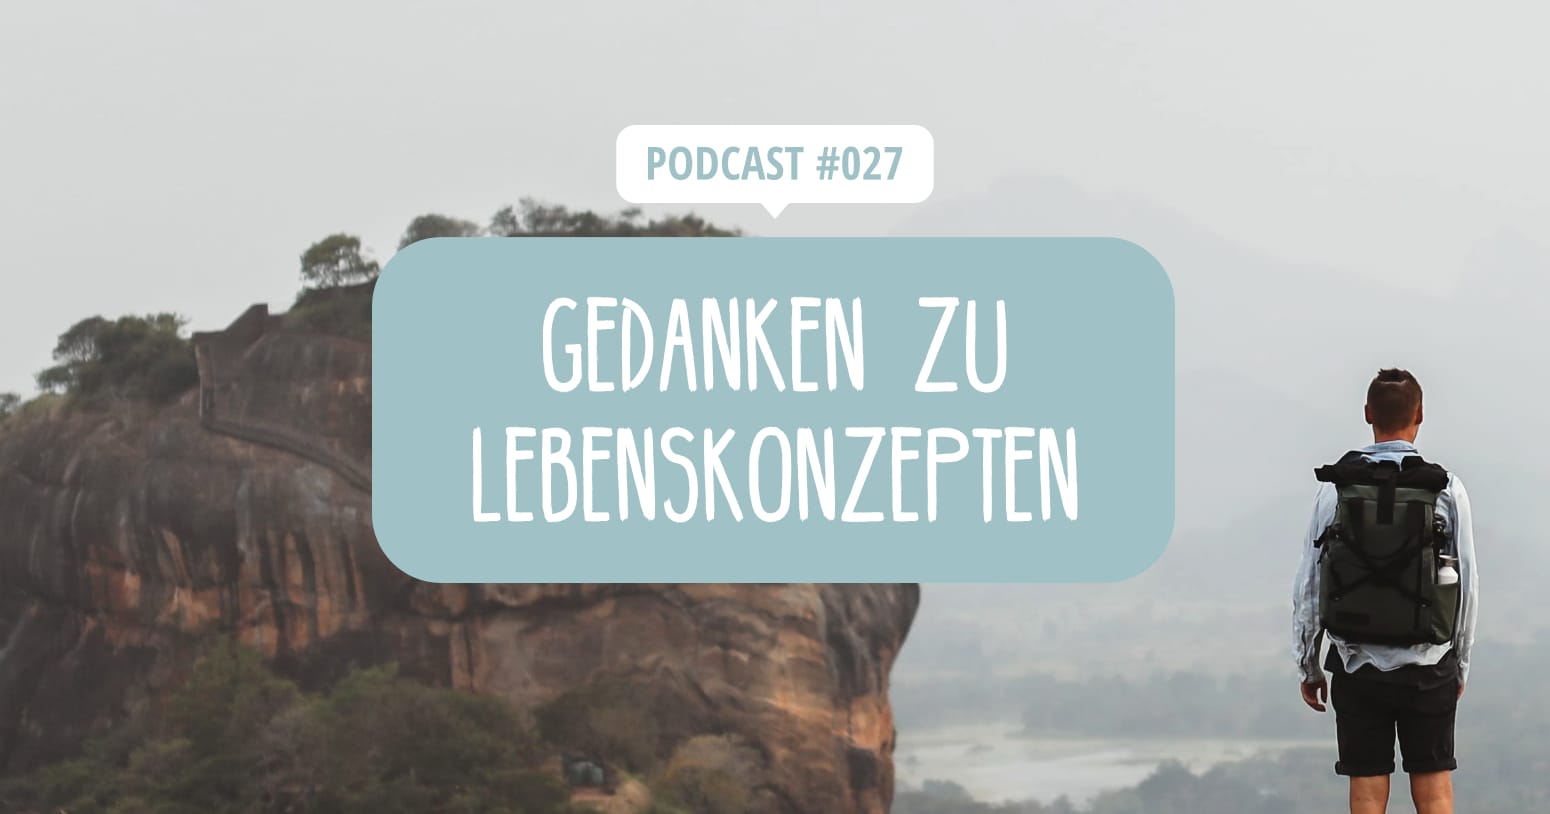 Podcast Episode 27 - Gedanken zu Lebenskonzepten in 2022